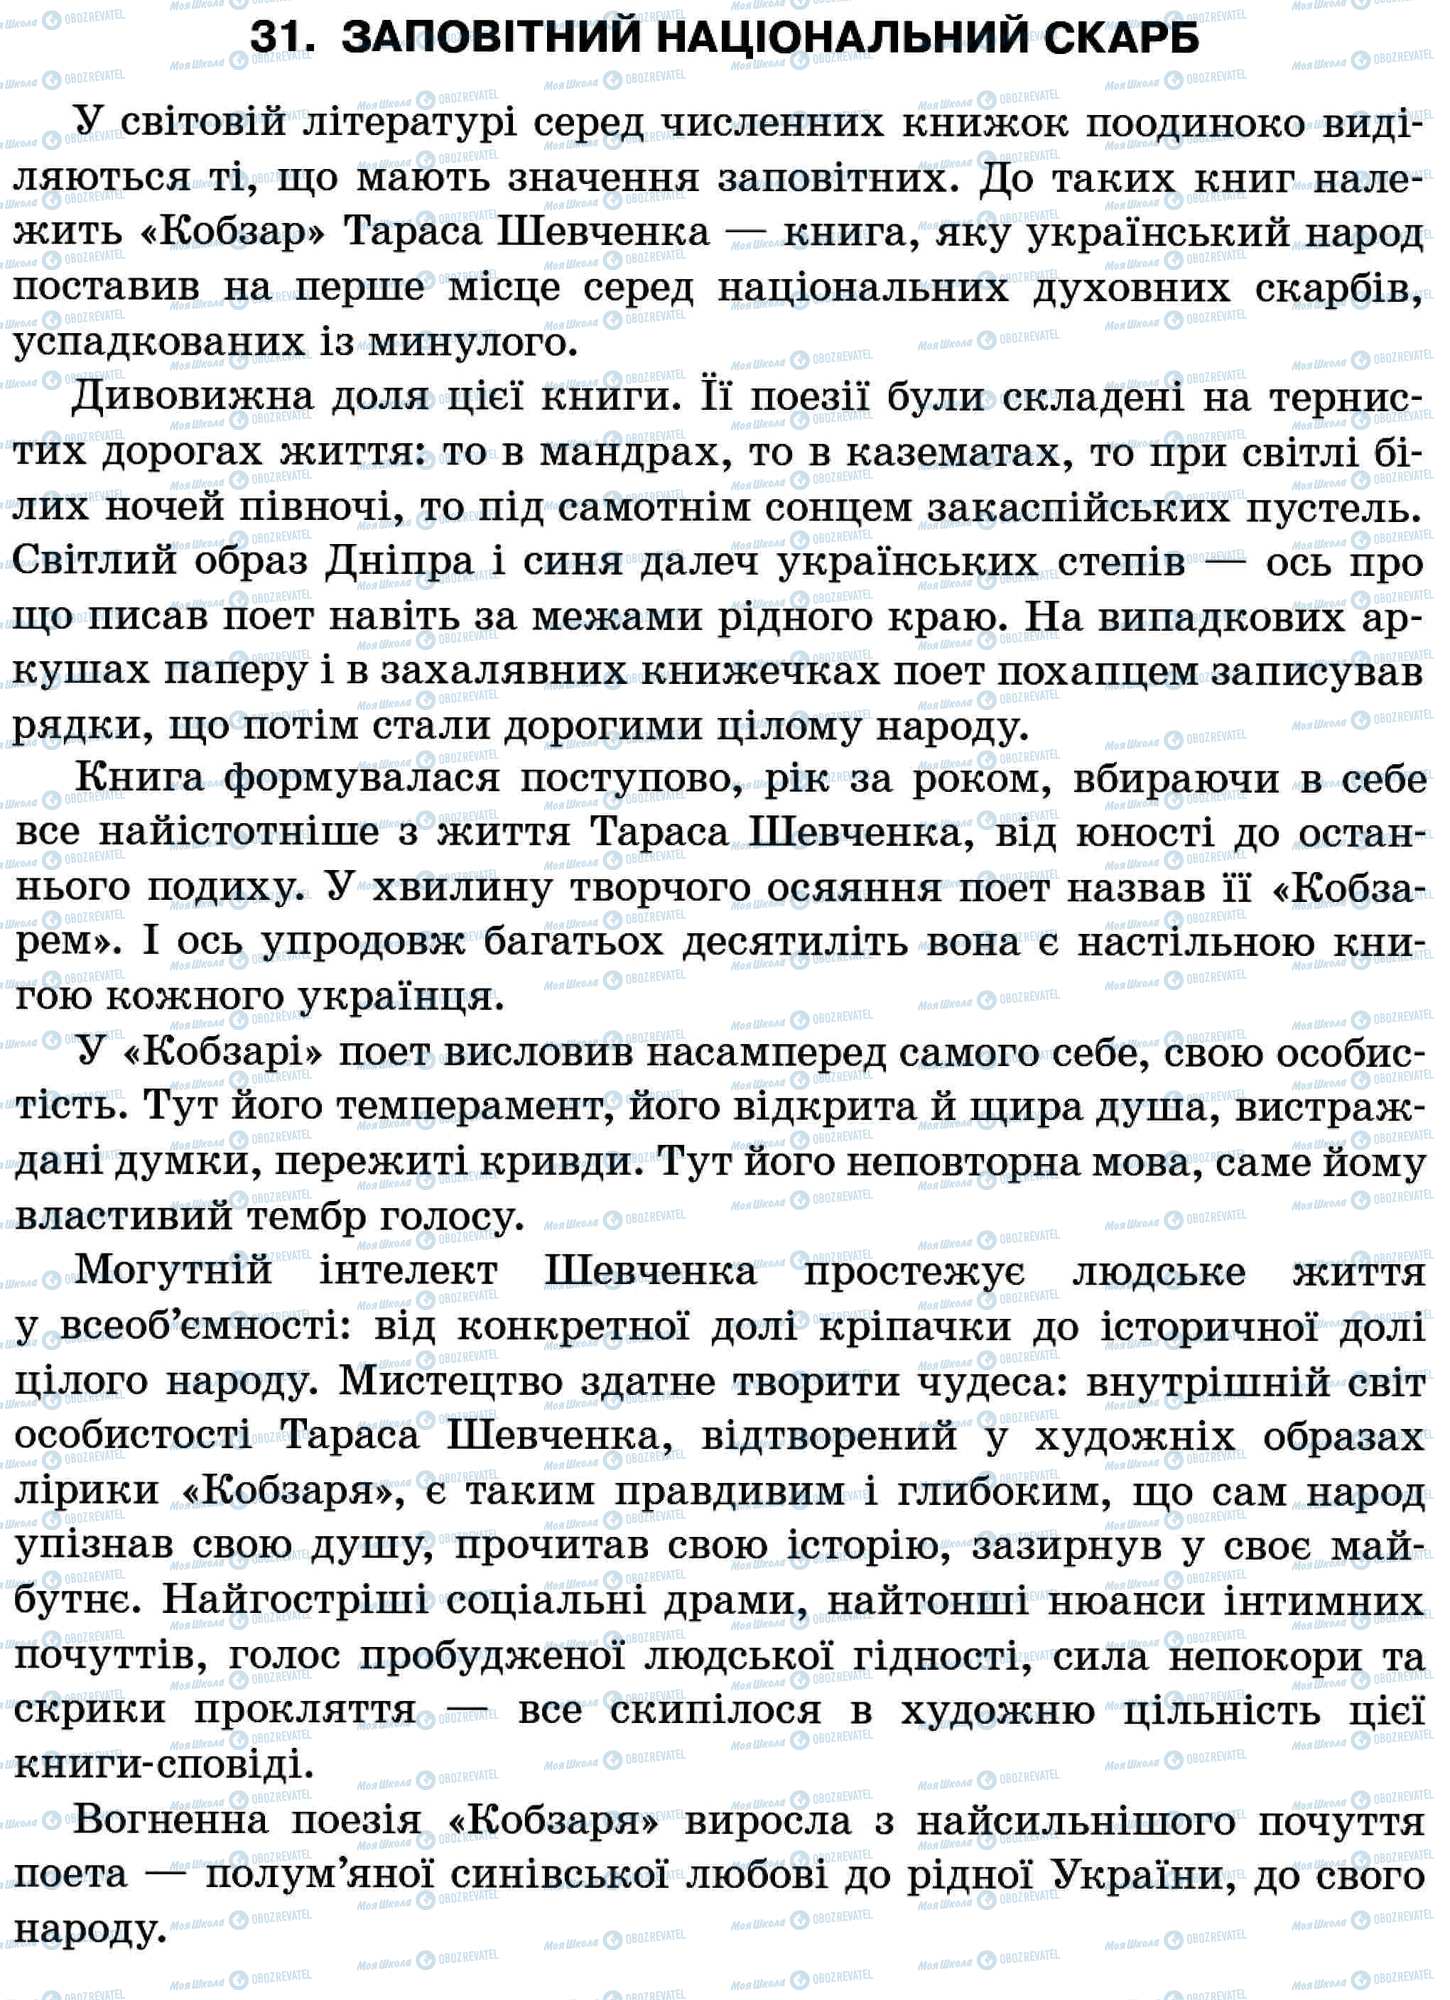 ДПА Українська мова 11 клас сторінка 31. Заповітний національний скарб